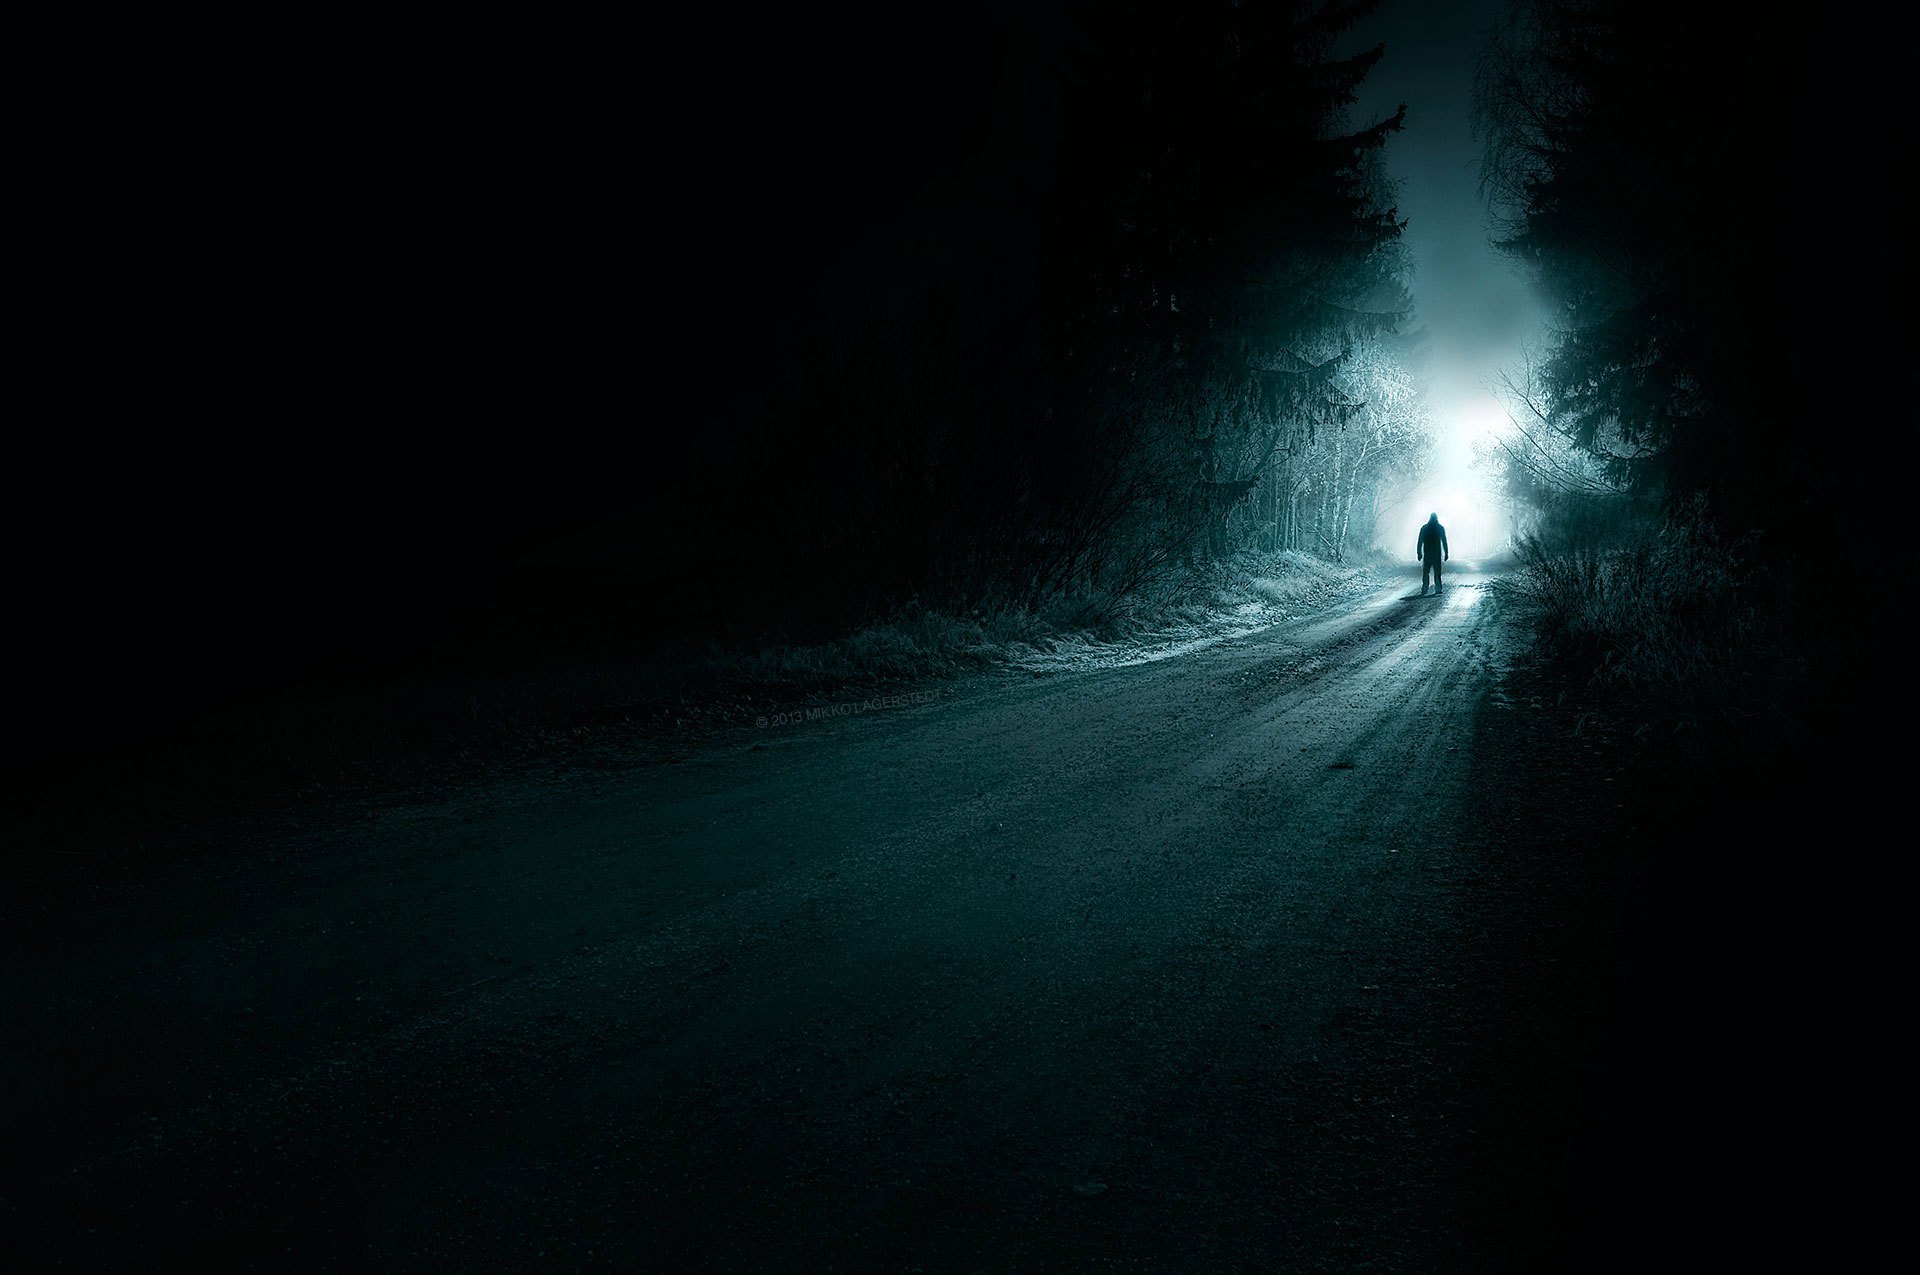 Ночи теплы и непроглядны в черной тьме. Свет во тьме. Темная дорога. Темнота пустота. Уходящий в темноту.